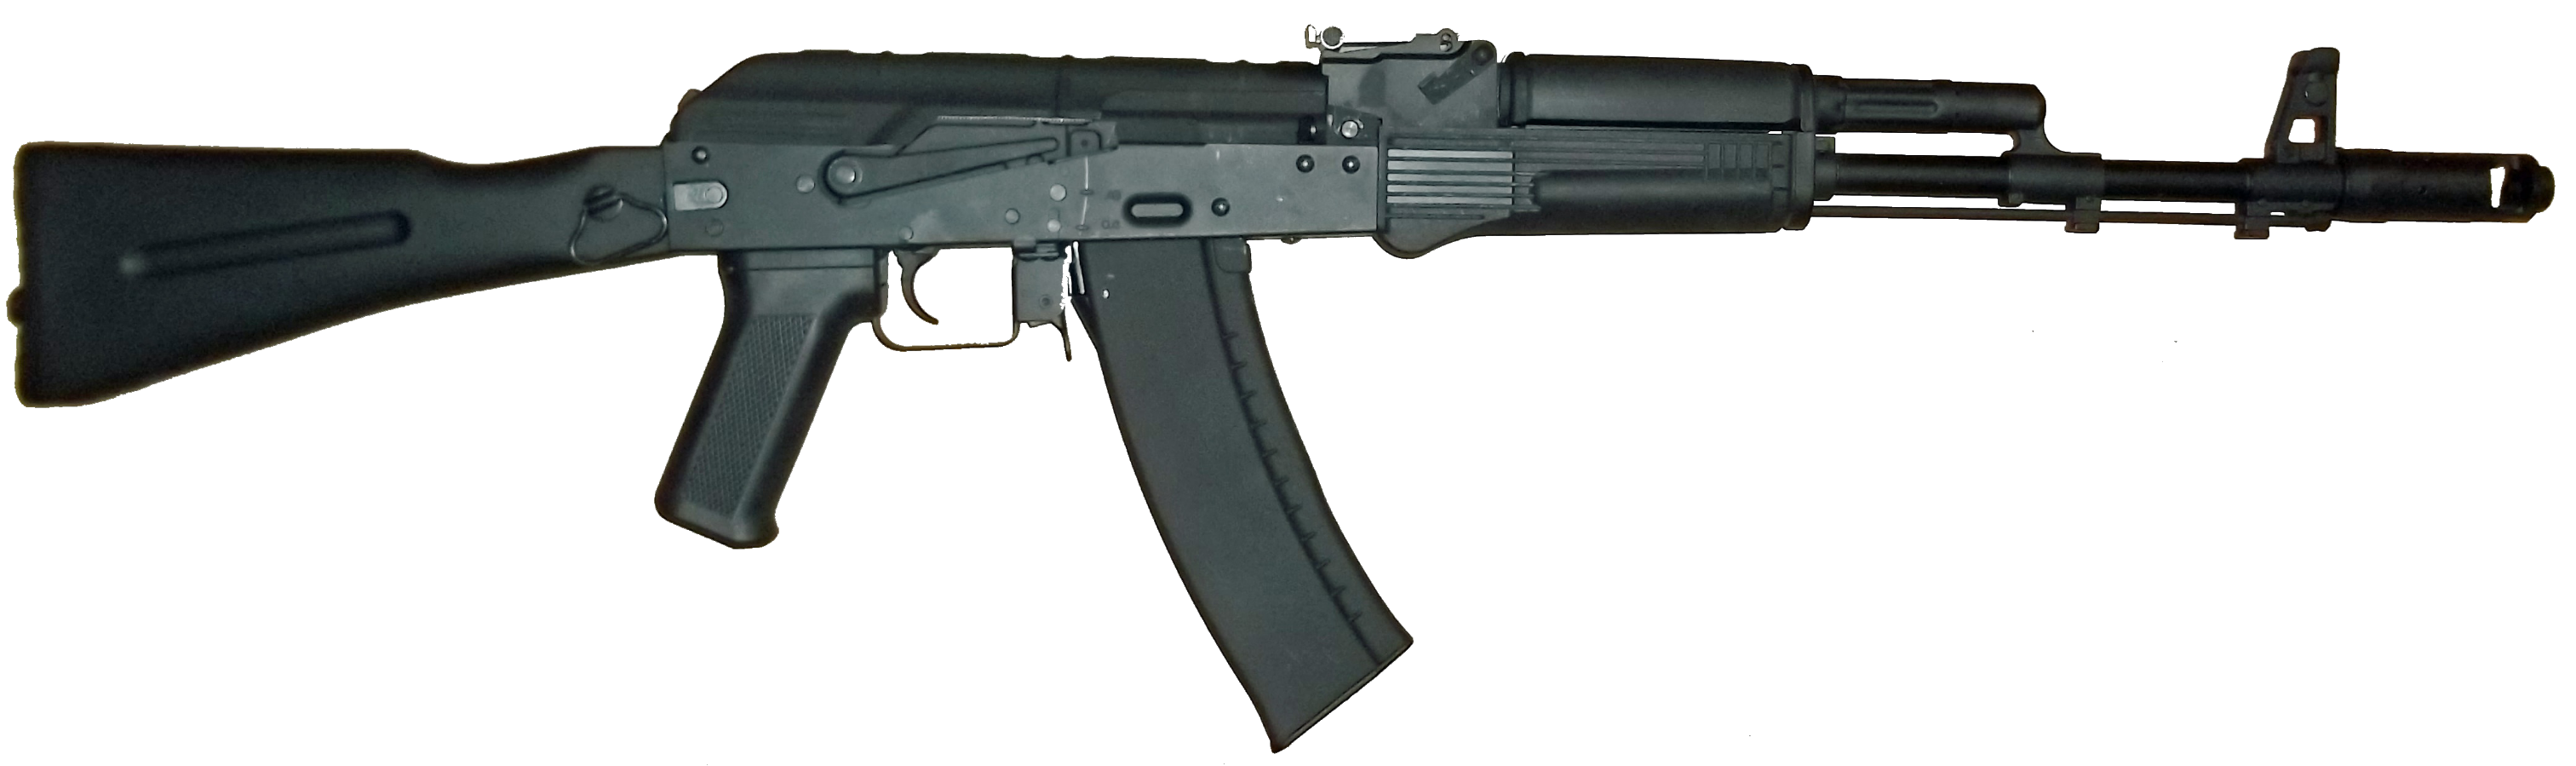 gun-68